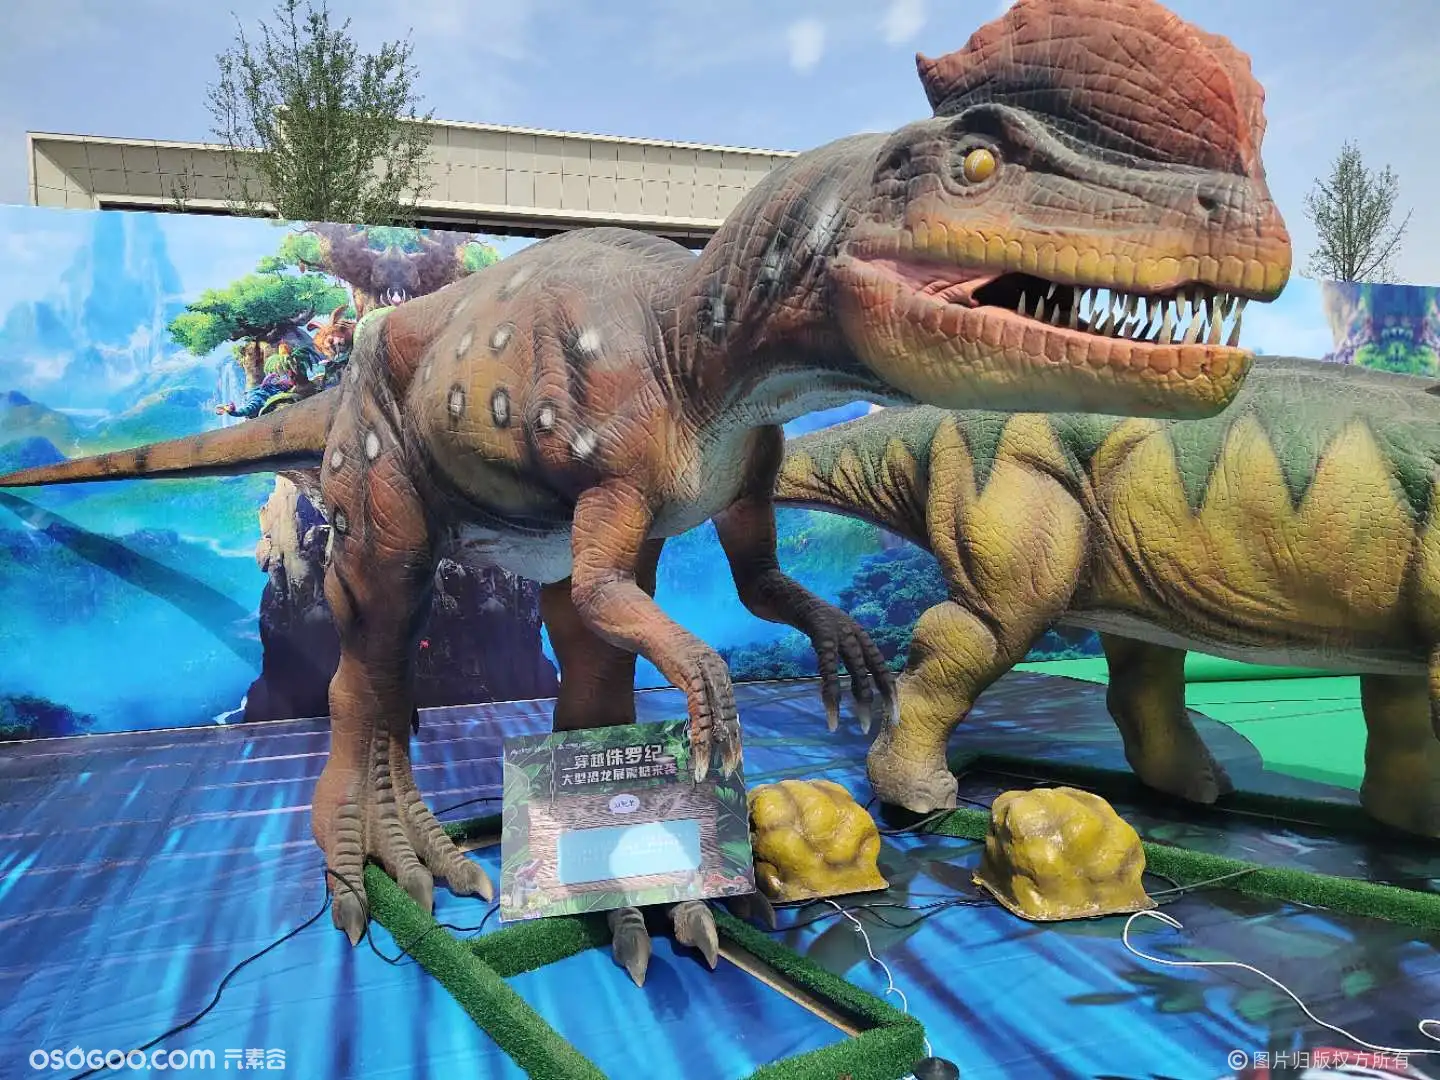 仿真恐龙主题展览大型恐龙展租赁恐龙模型展览出租出售